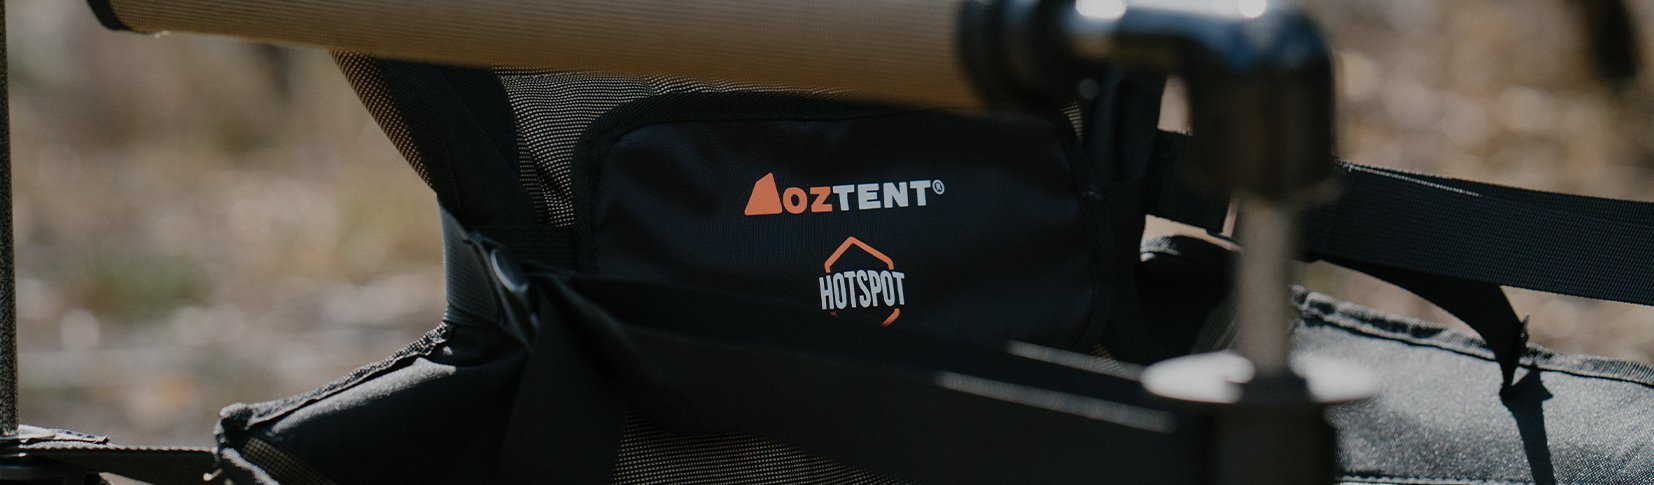 Oztent HotSpot™ Lumbar Pack